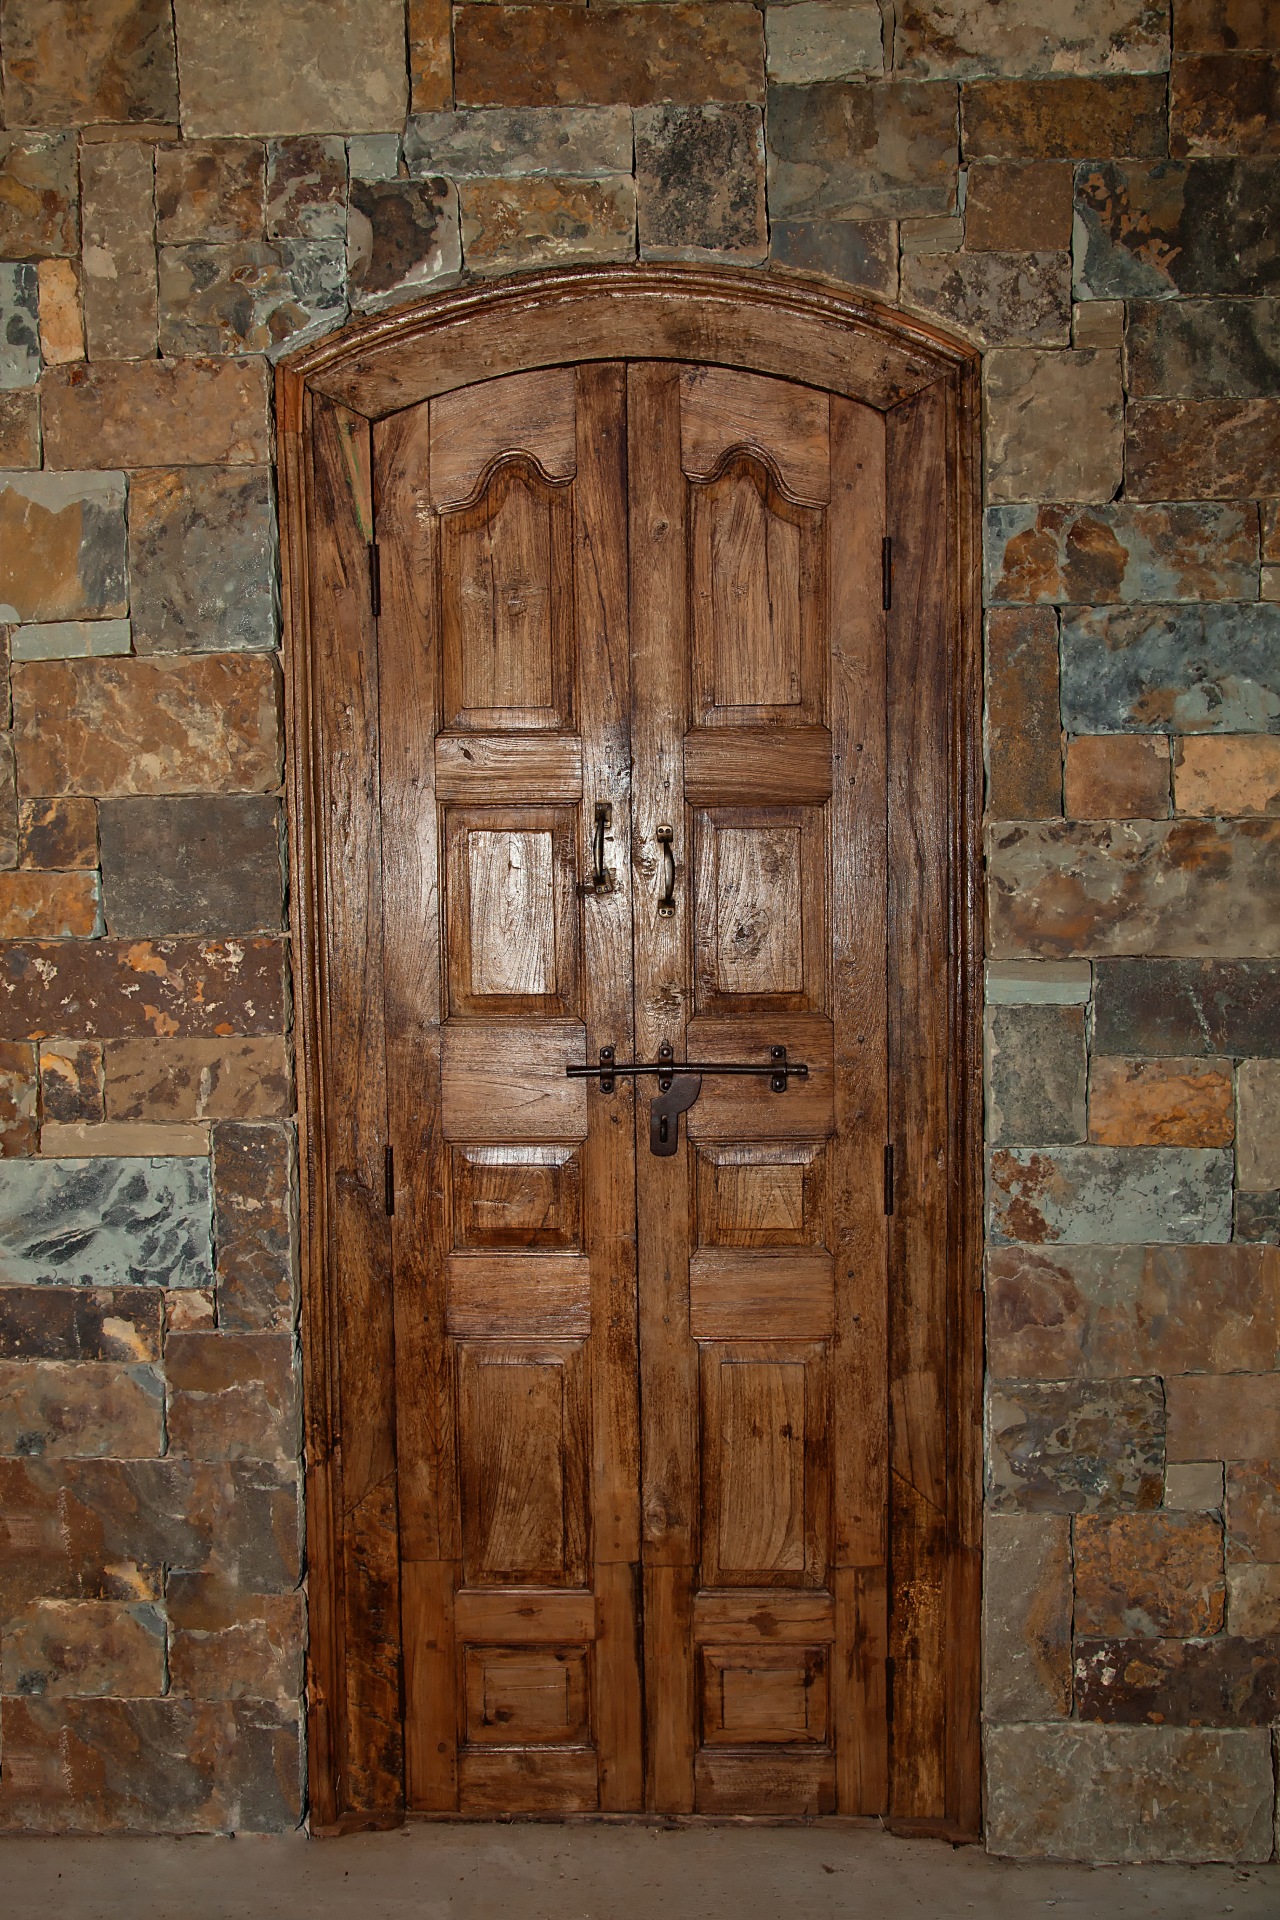 Brown wooden door